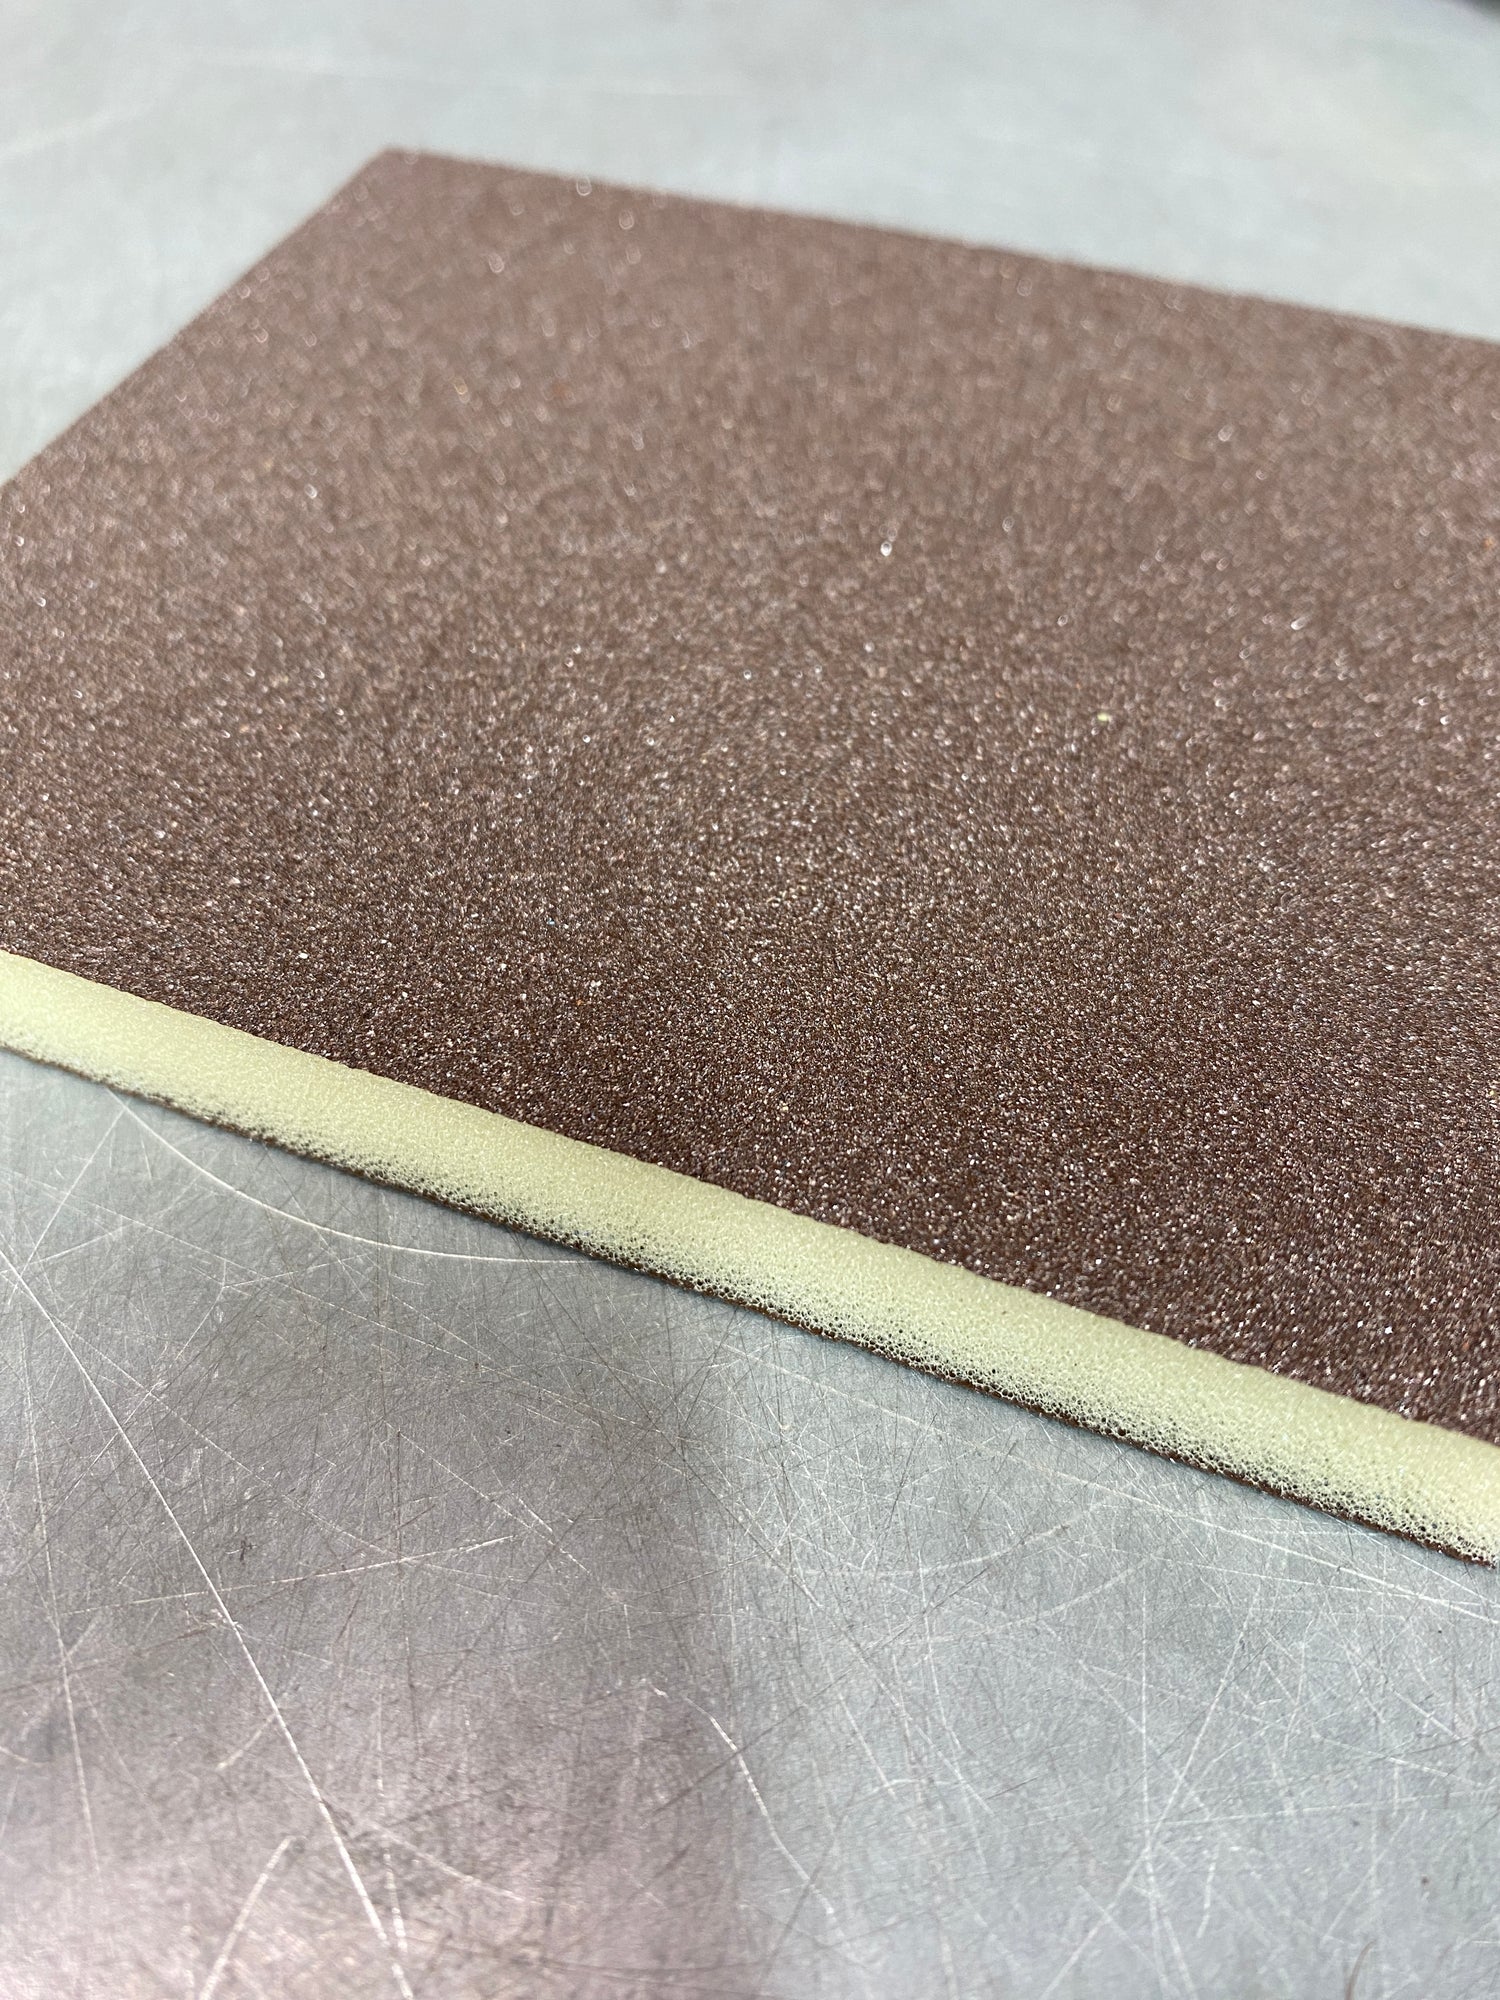 Abrasive Sanding Pads & Sponges - Crockers Paint & Wallpaper